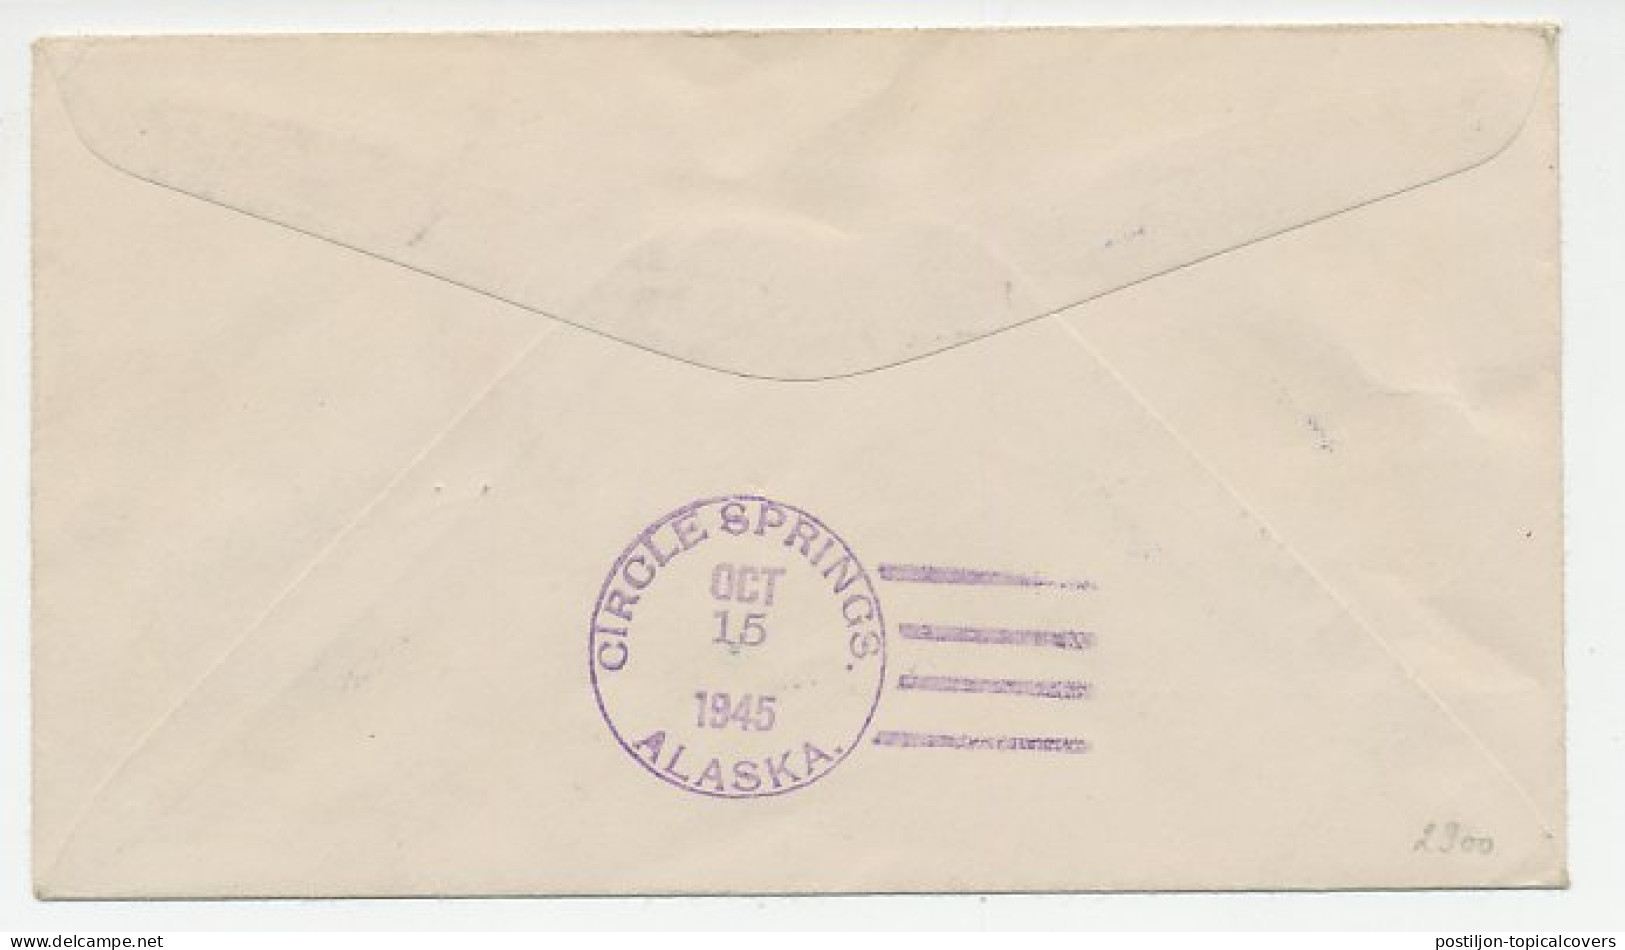 Cover / Postmark USA 1945 Alaska Dog Team Post - Miller House - Spedizioni Artiche